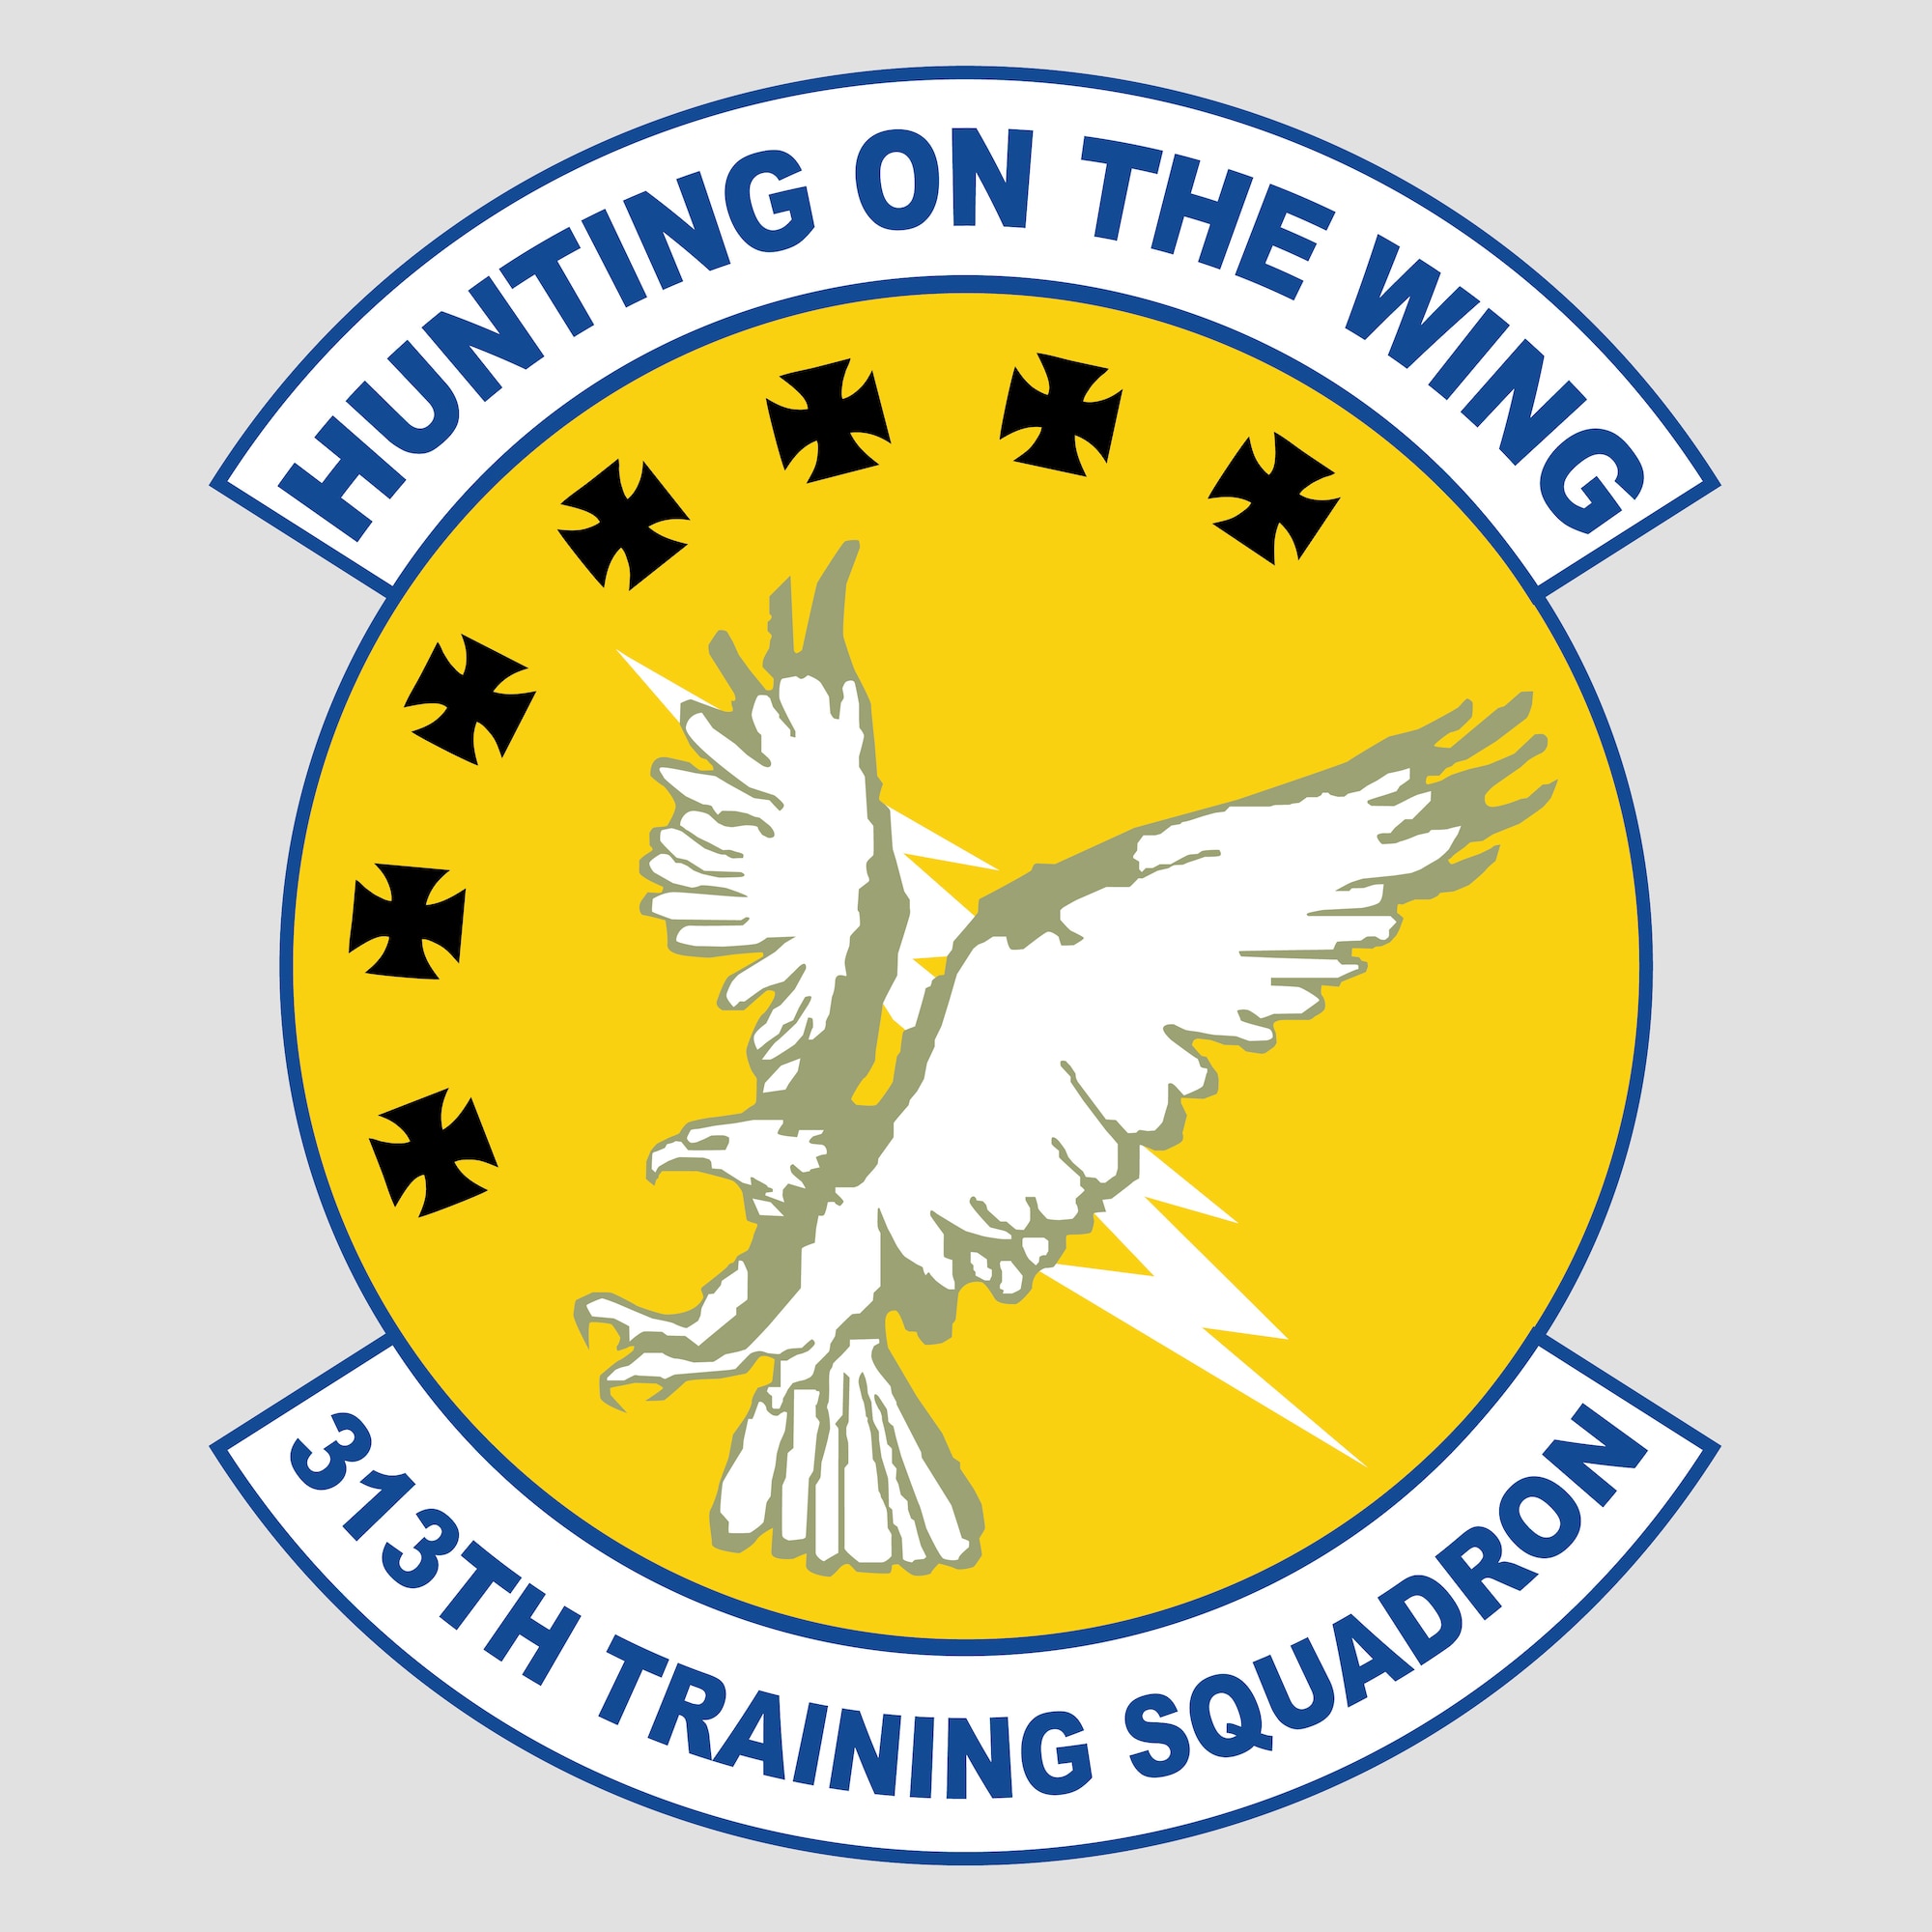 313th Training Squadron logo